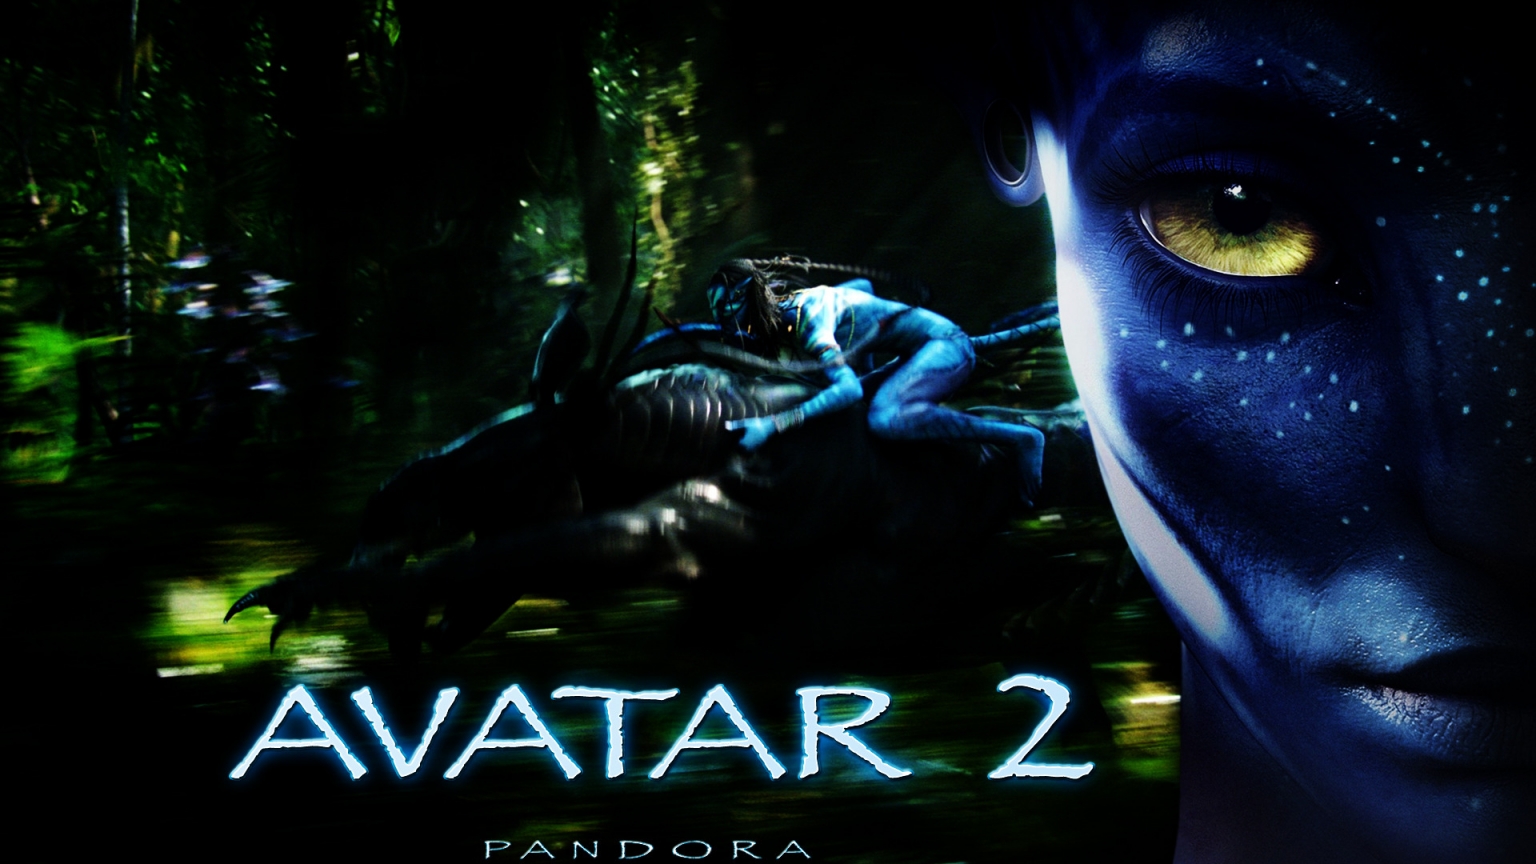 Avatar 2 2015 for 1536 x 864 HDTV resolution